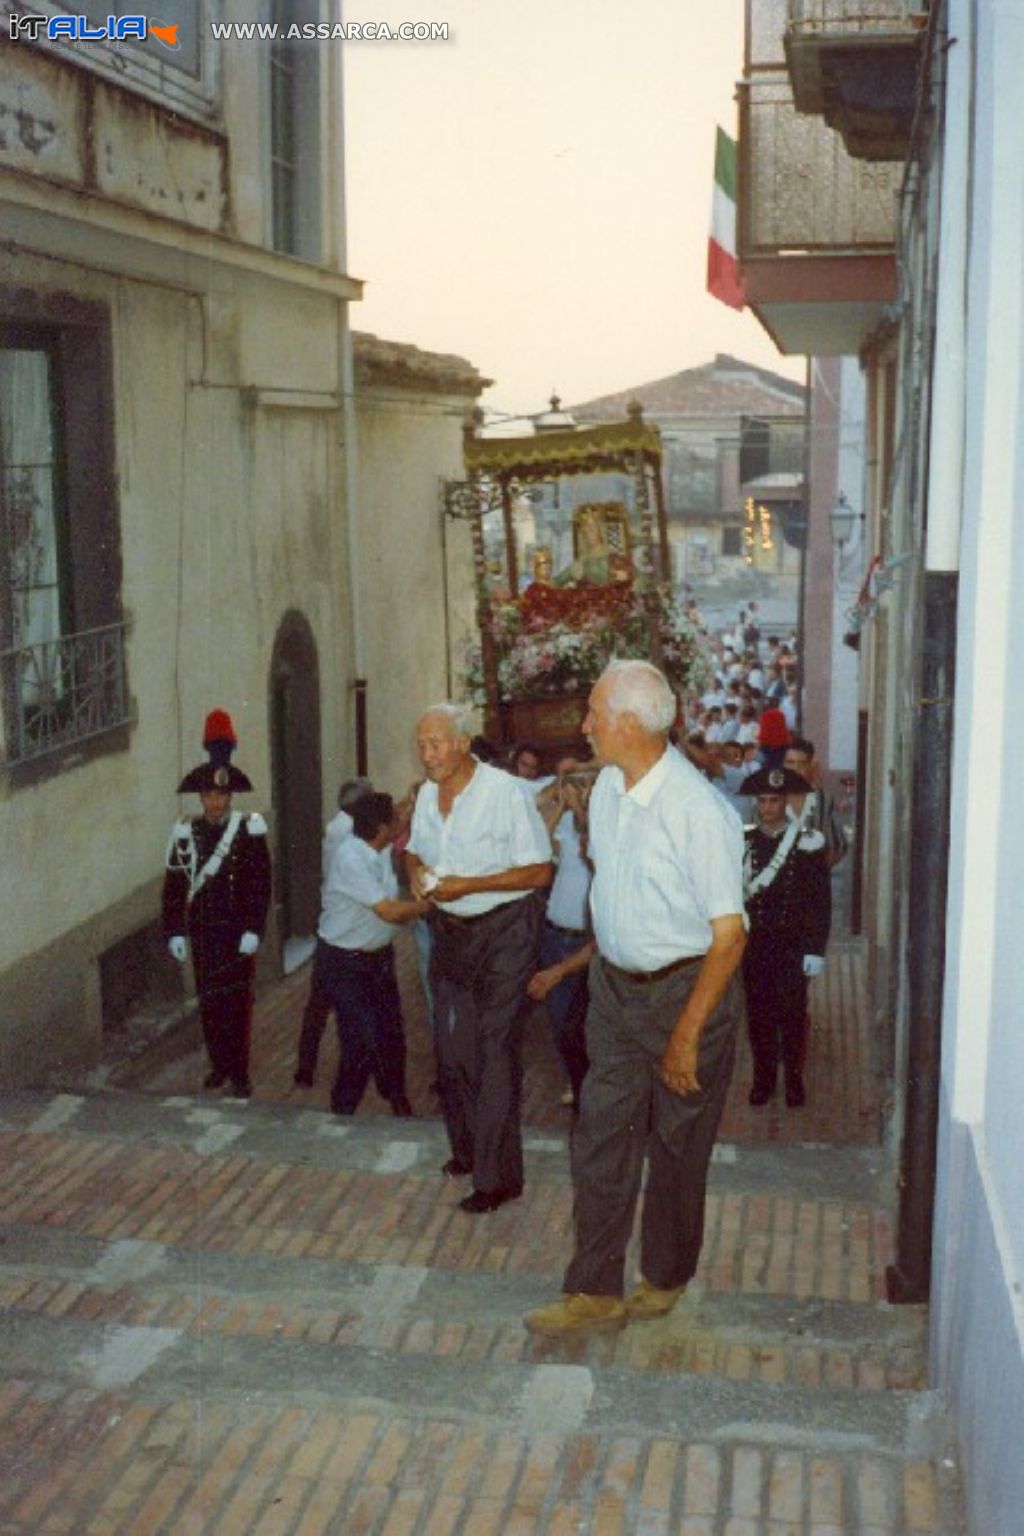 S.Anna 1988